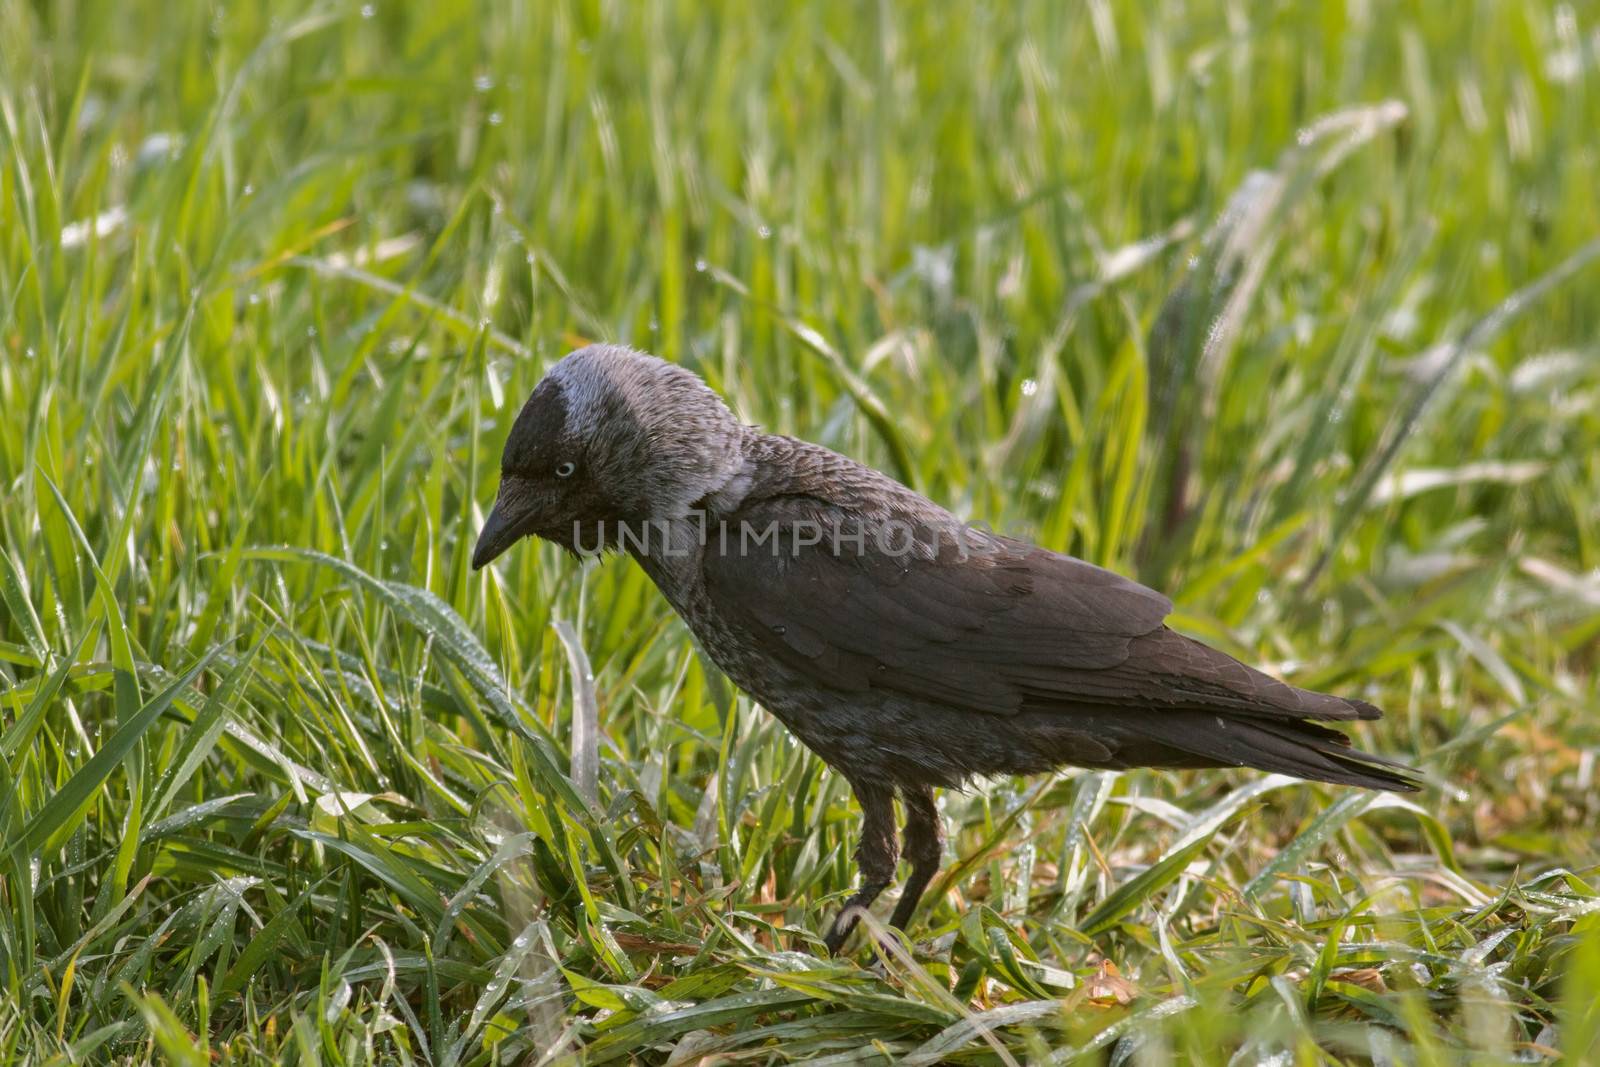 Jackdaw (Corvus monedula) by Ohotnik